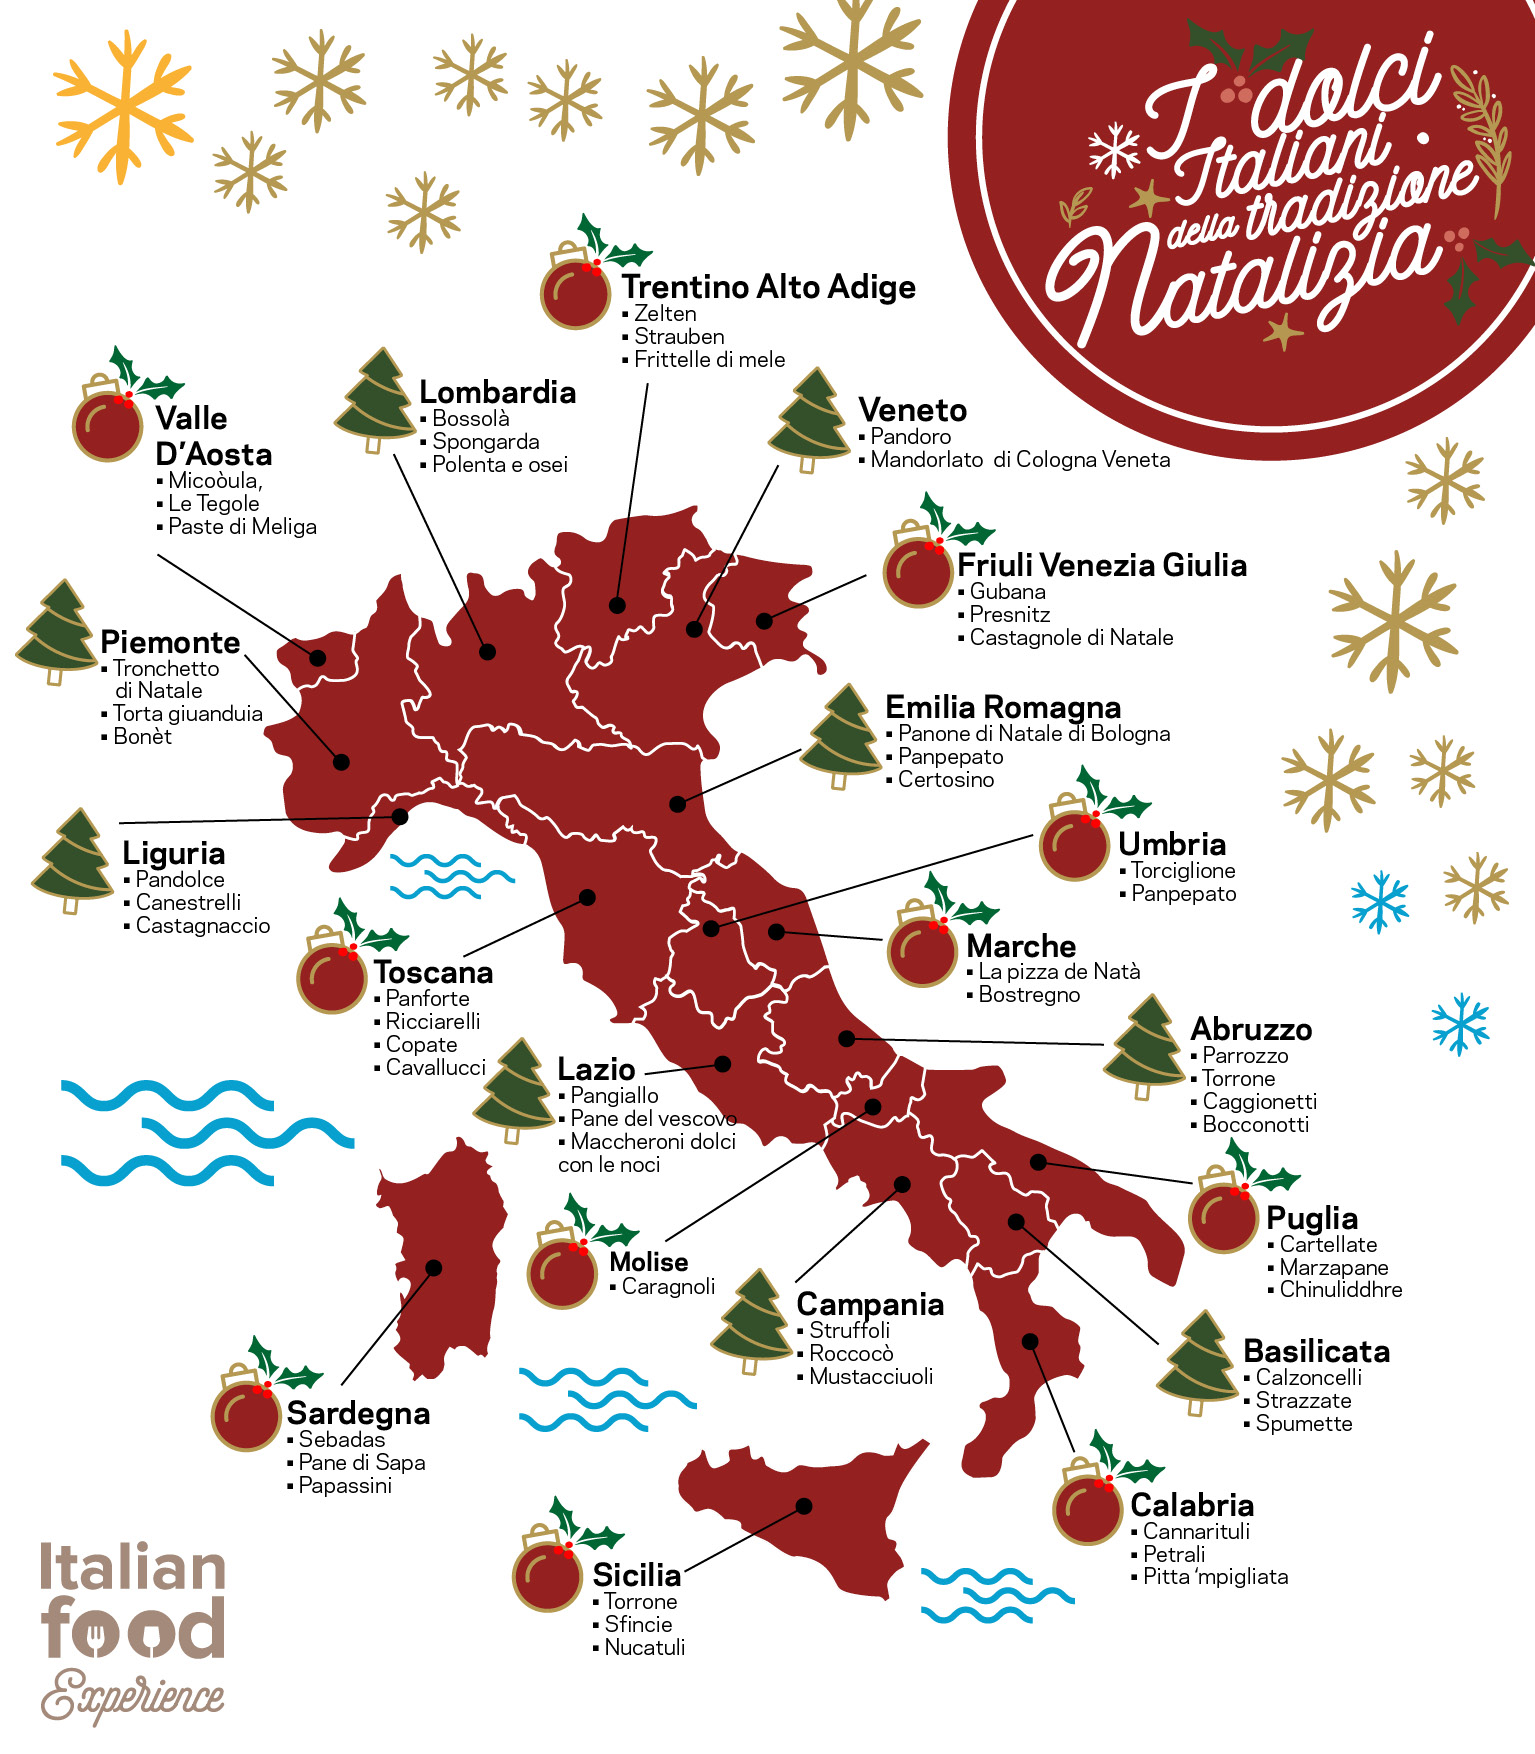 Dolci Di Natale Regionali.Dolci Tipici Natalizi In Italia Regione Per Regione